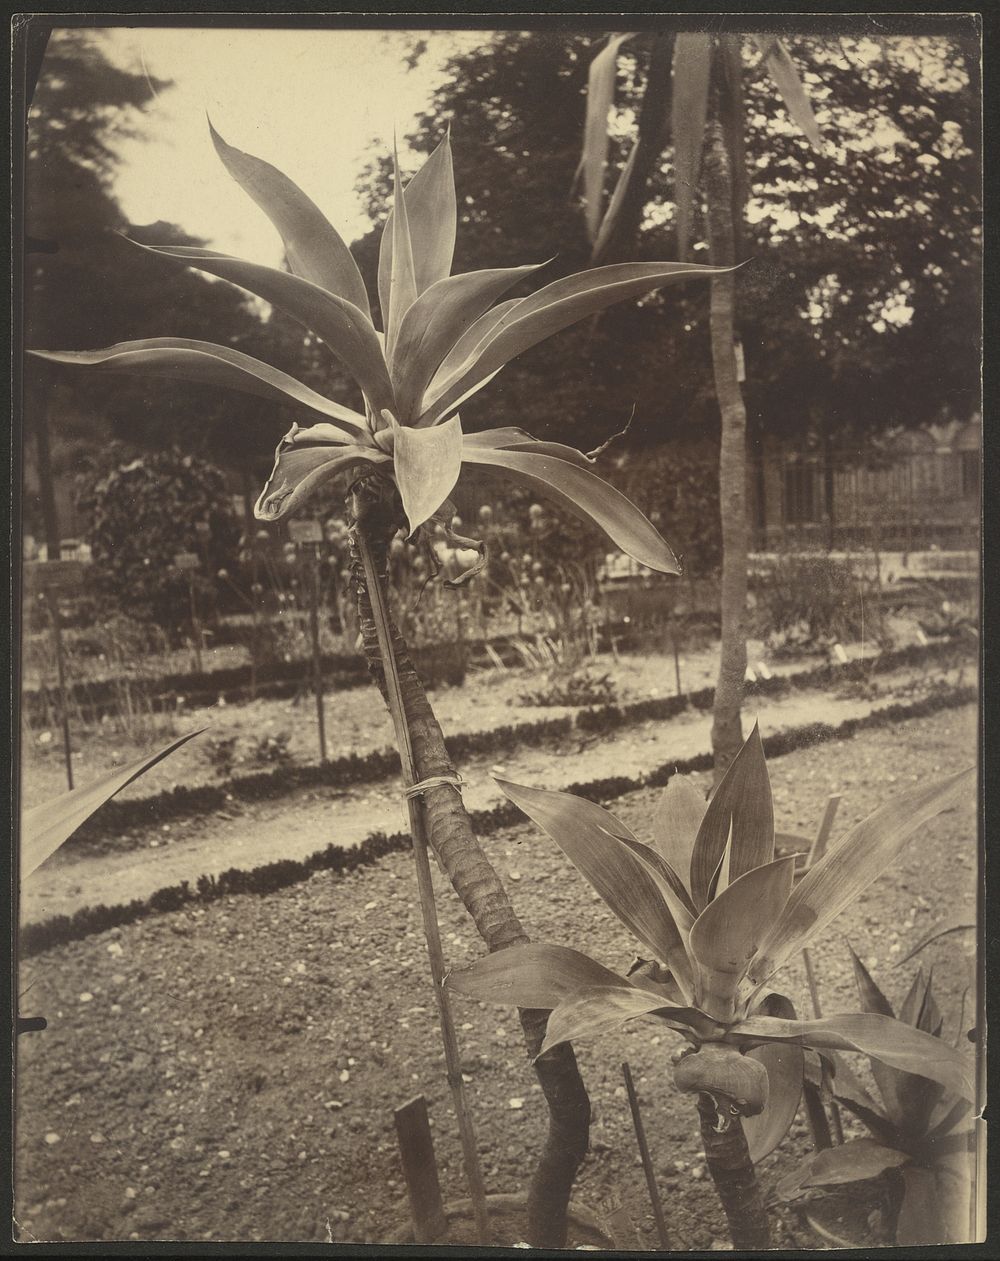 Plante du Mexique (Mexican Plant) by Eugène Atget